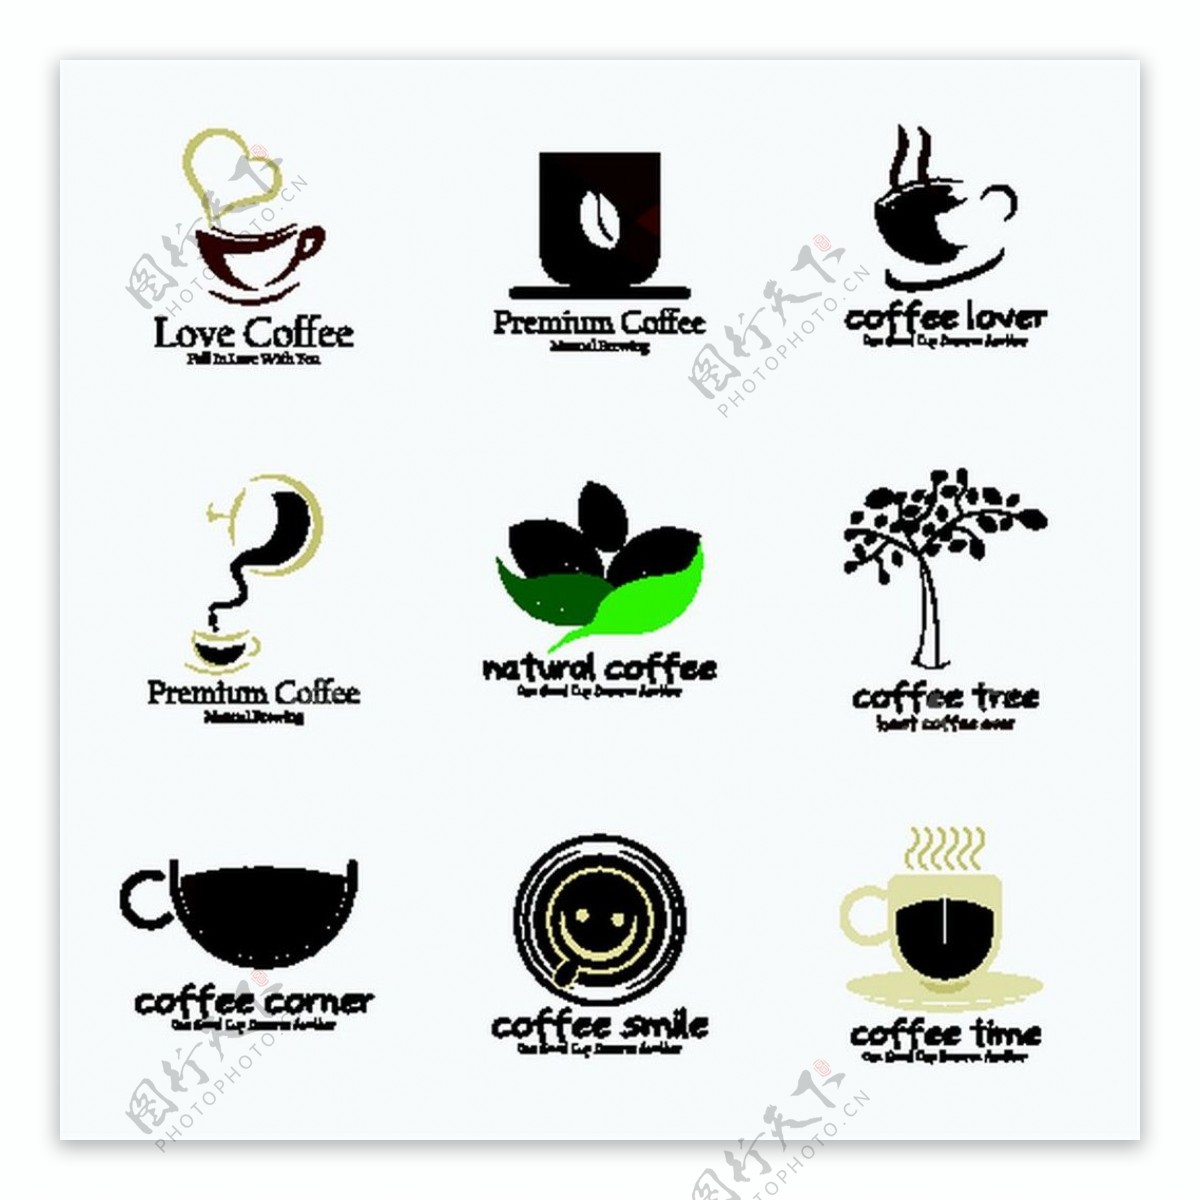 咖啡饮料标志图片